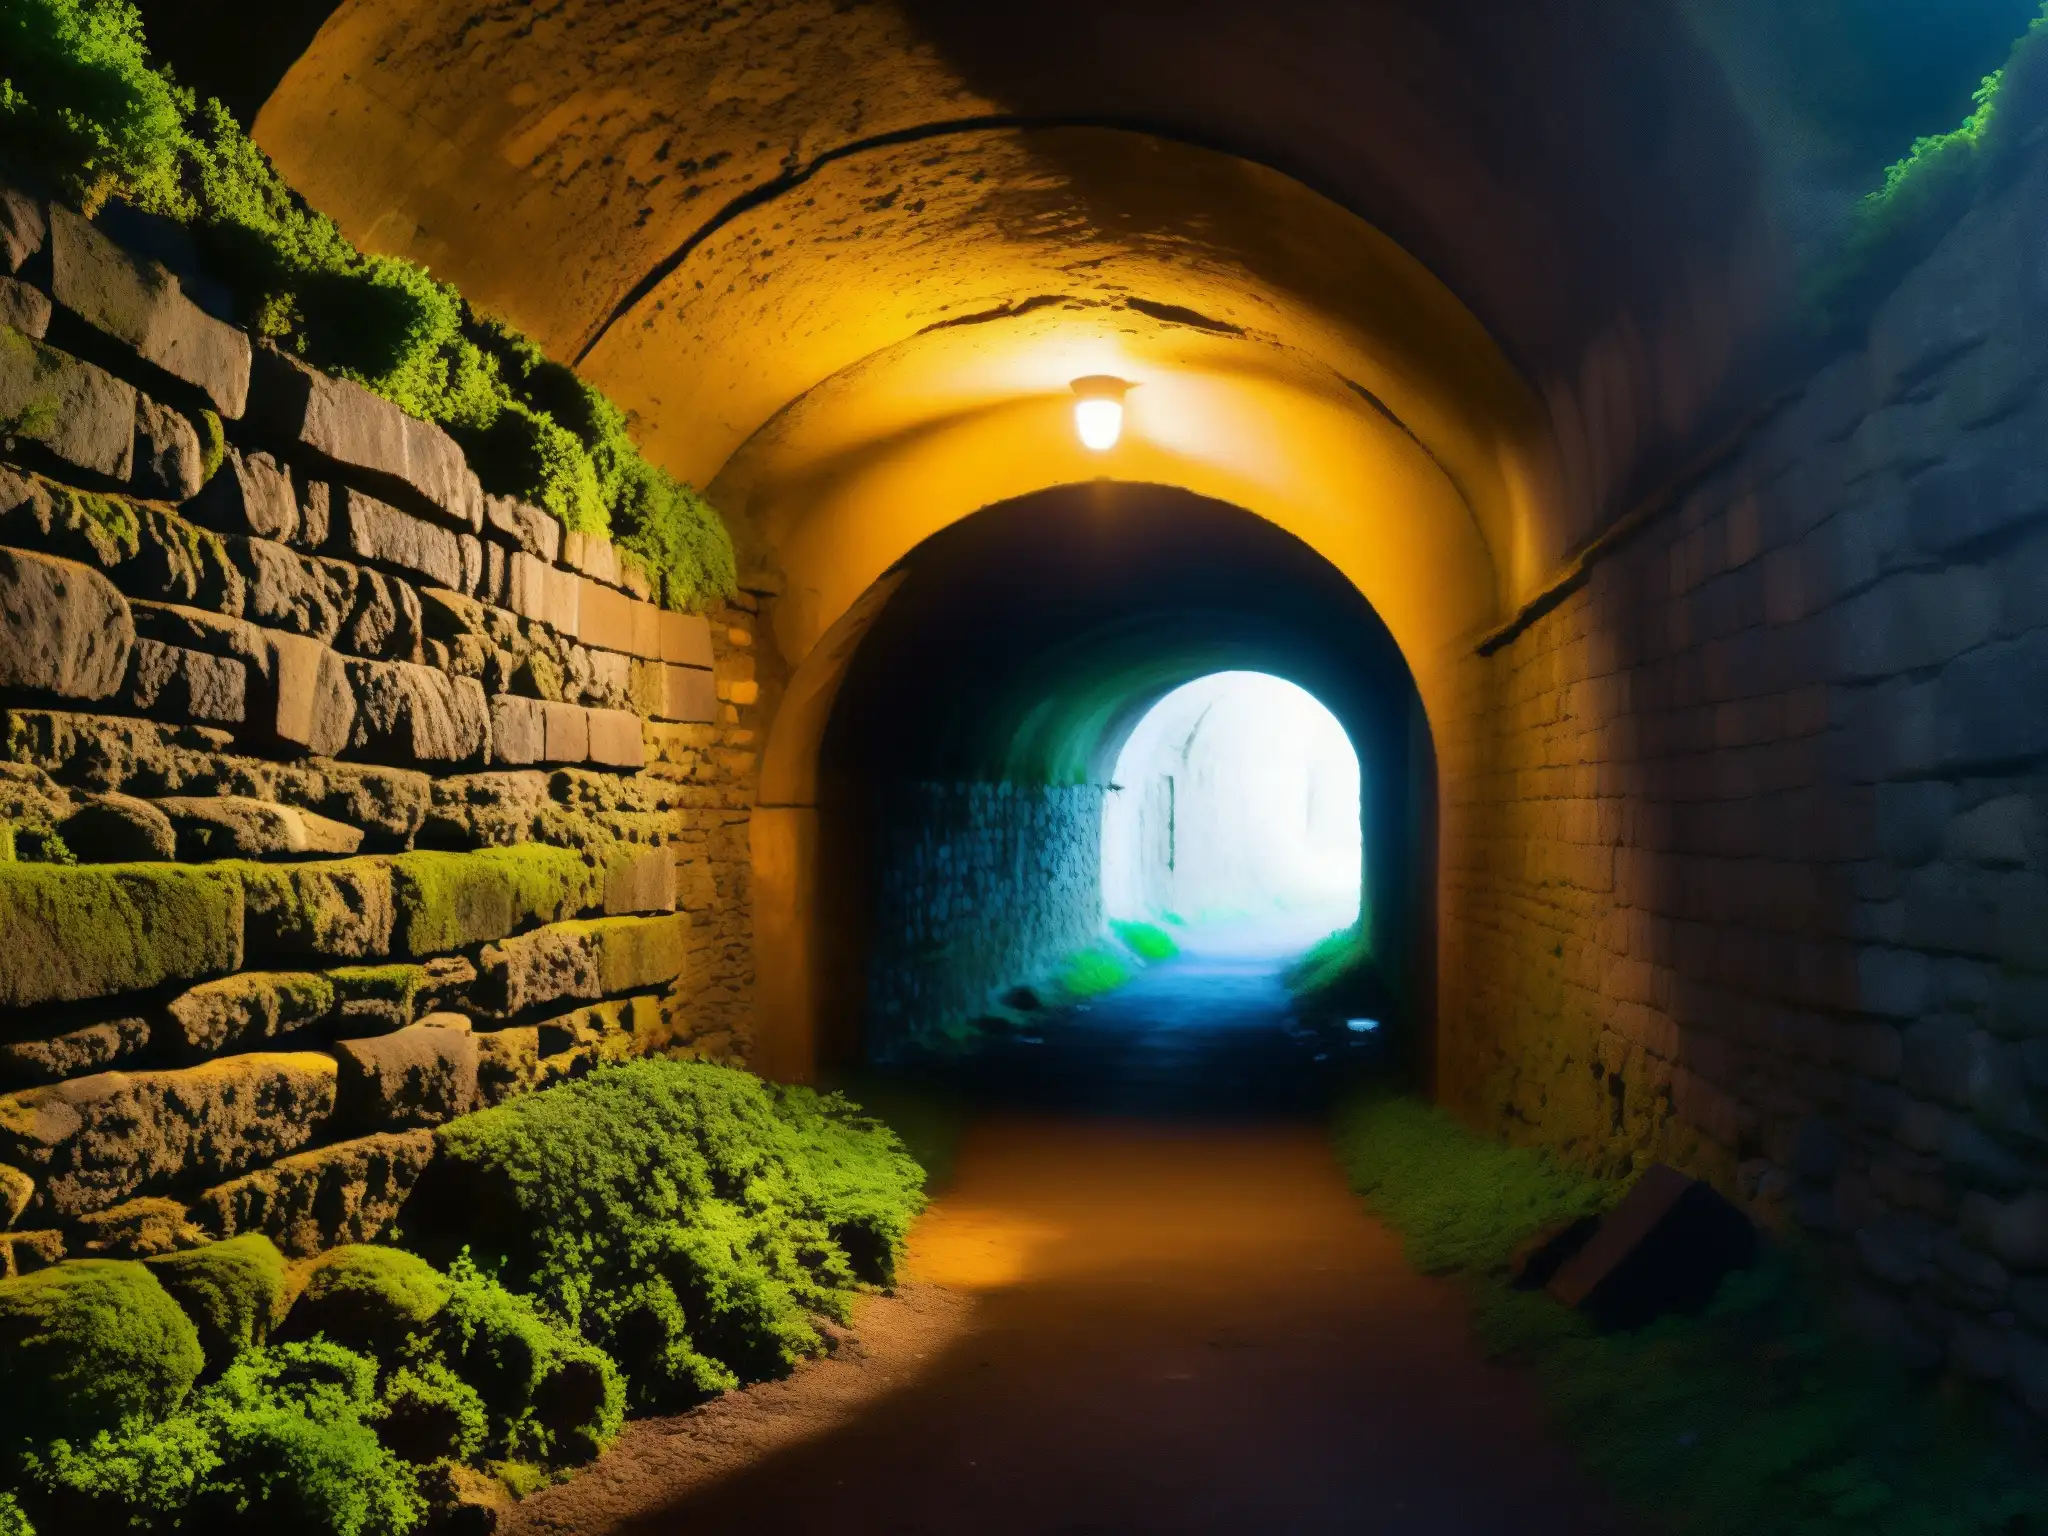 Mujer del Túnel de Yamate: Entrada sombría con paredes de piedra cubiertas de musgo, una luz sutil al final evoca un ambiente misterioso y cautivador